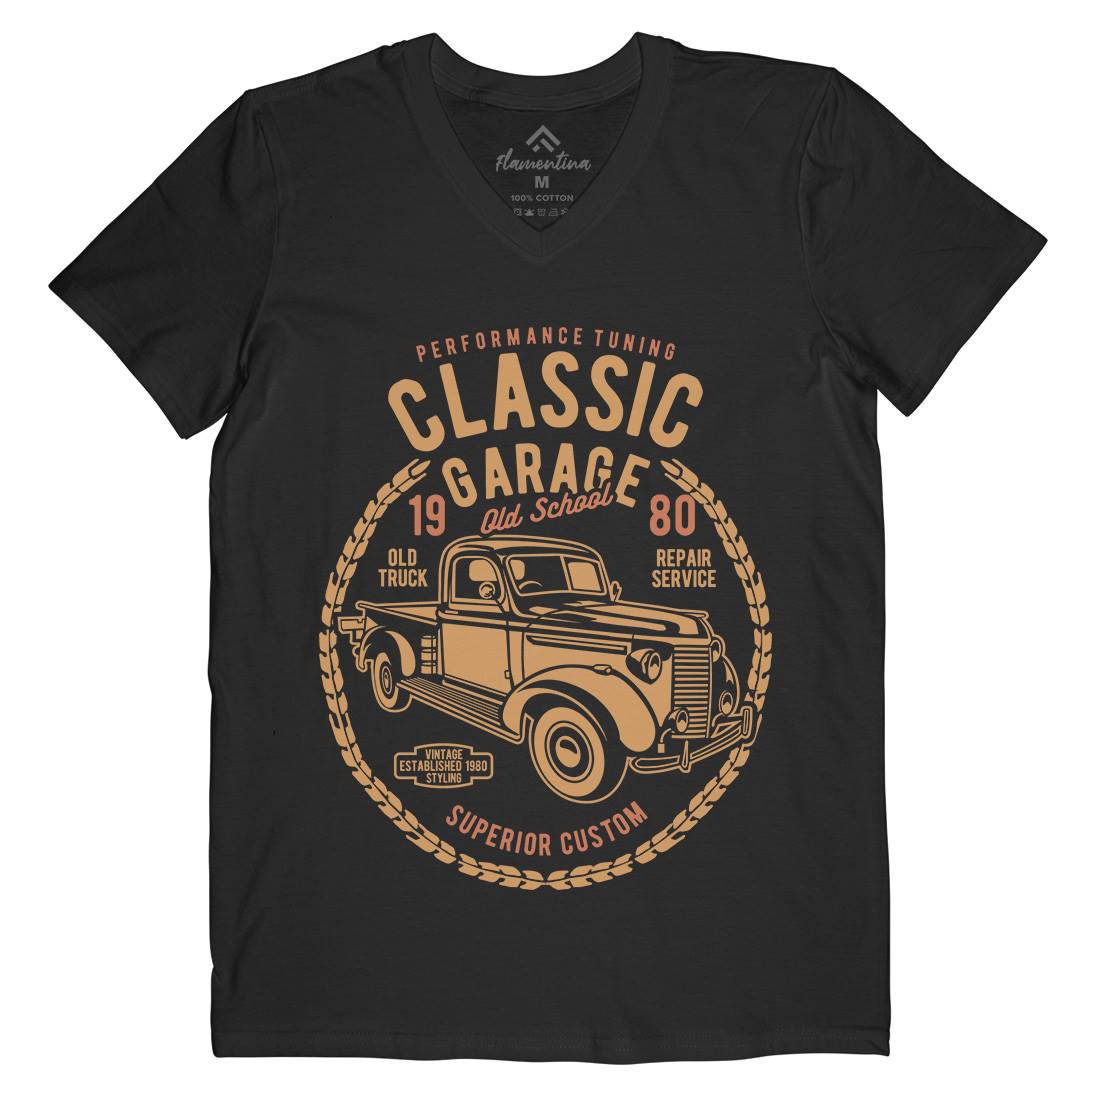 Classic Garage Mens Organic V-Neck T-Shirt Cars B194